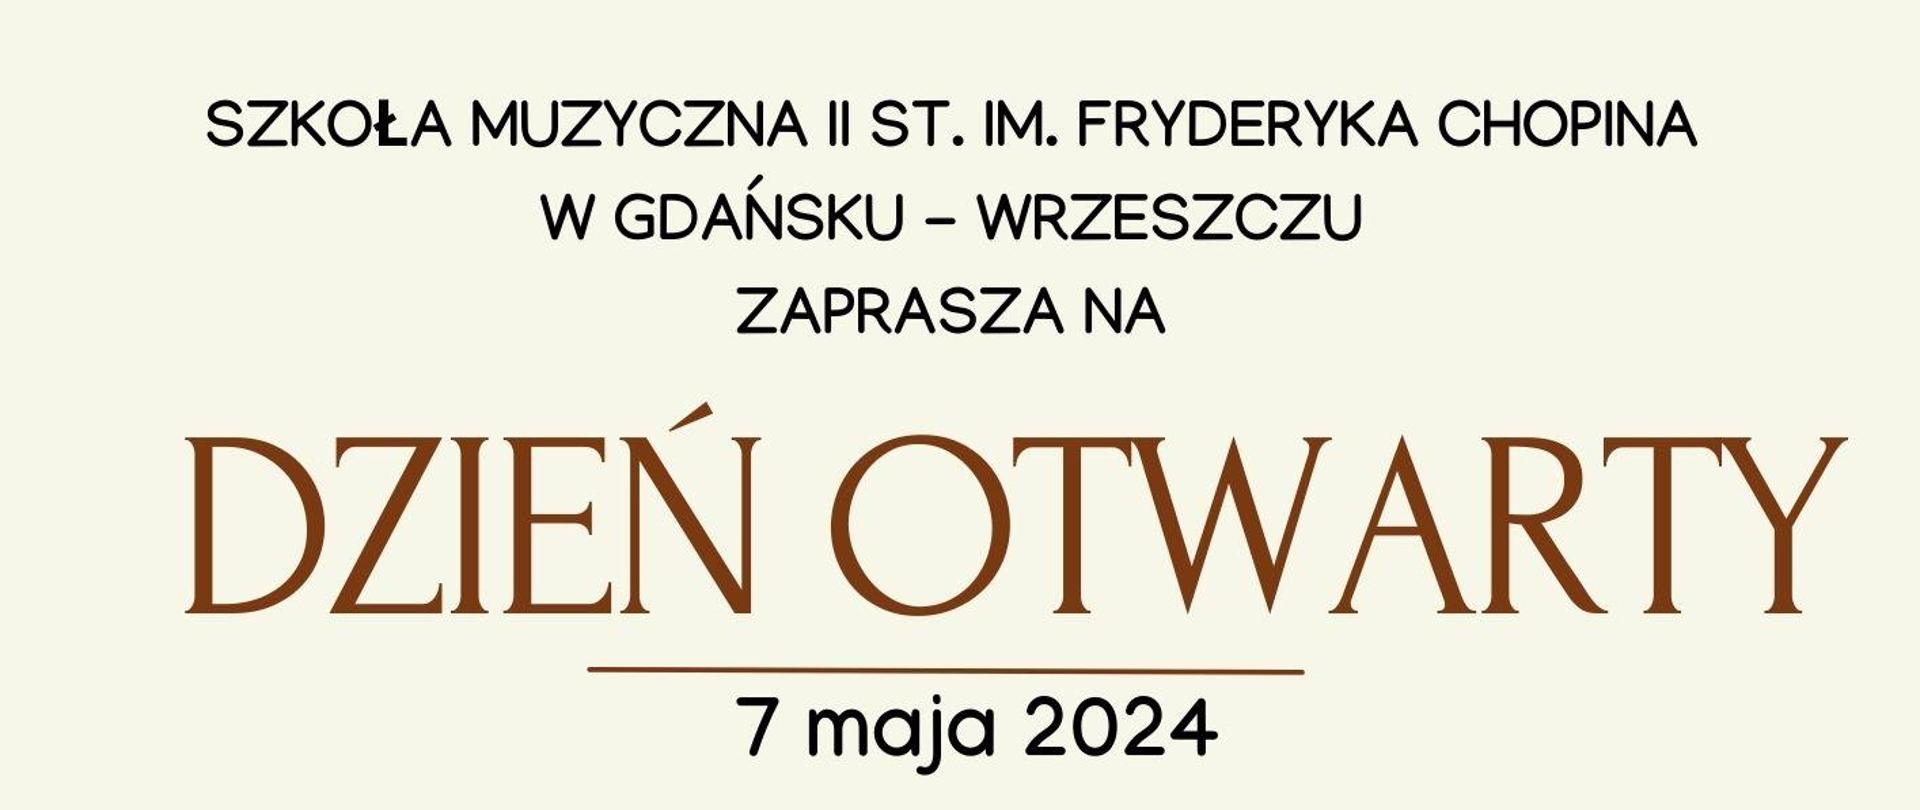 Plakat informujący o Dniu Otwartym Szkoły Muzycznej II st., który odbędzie się 7 maja 2024 o godzinie 16.30.